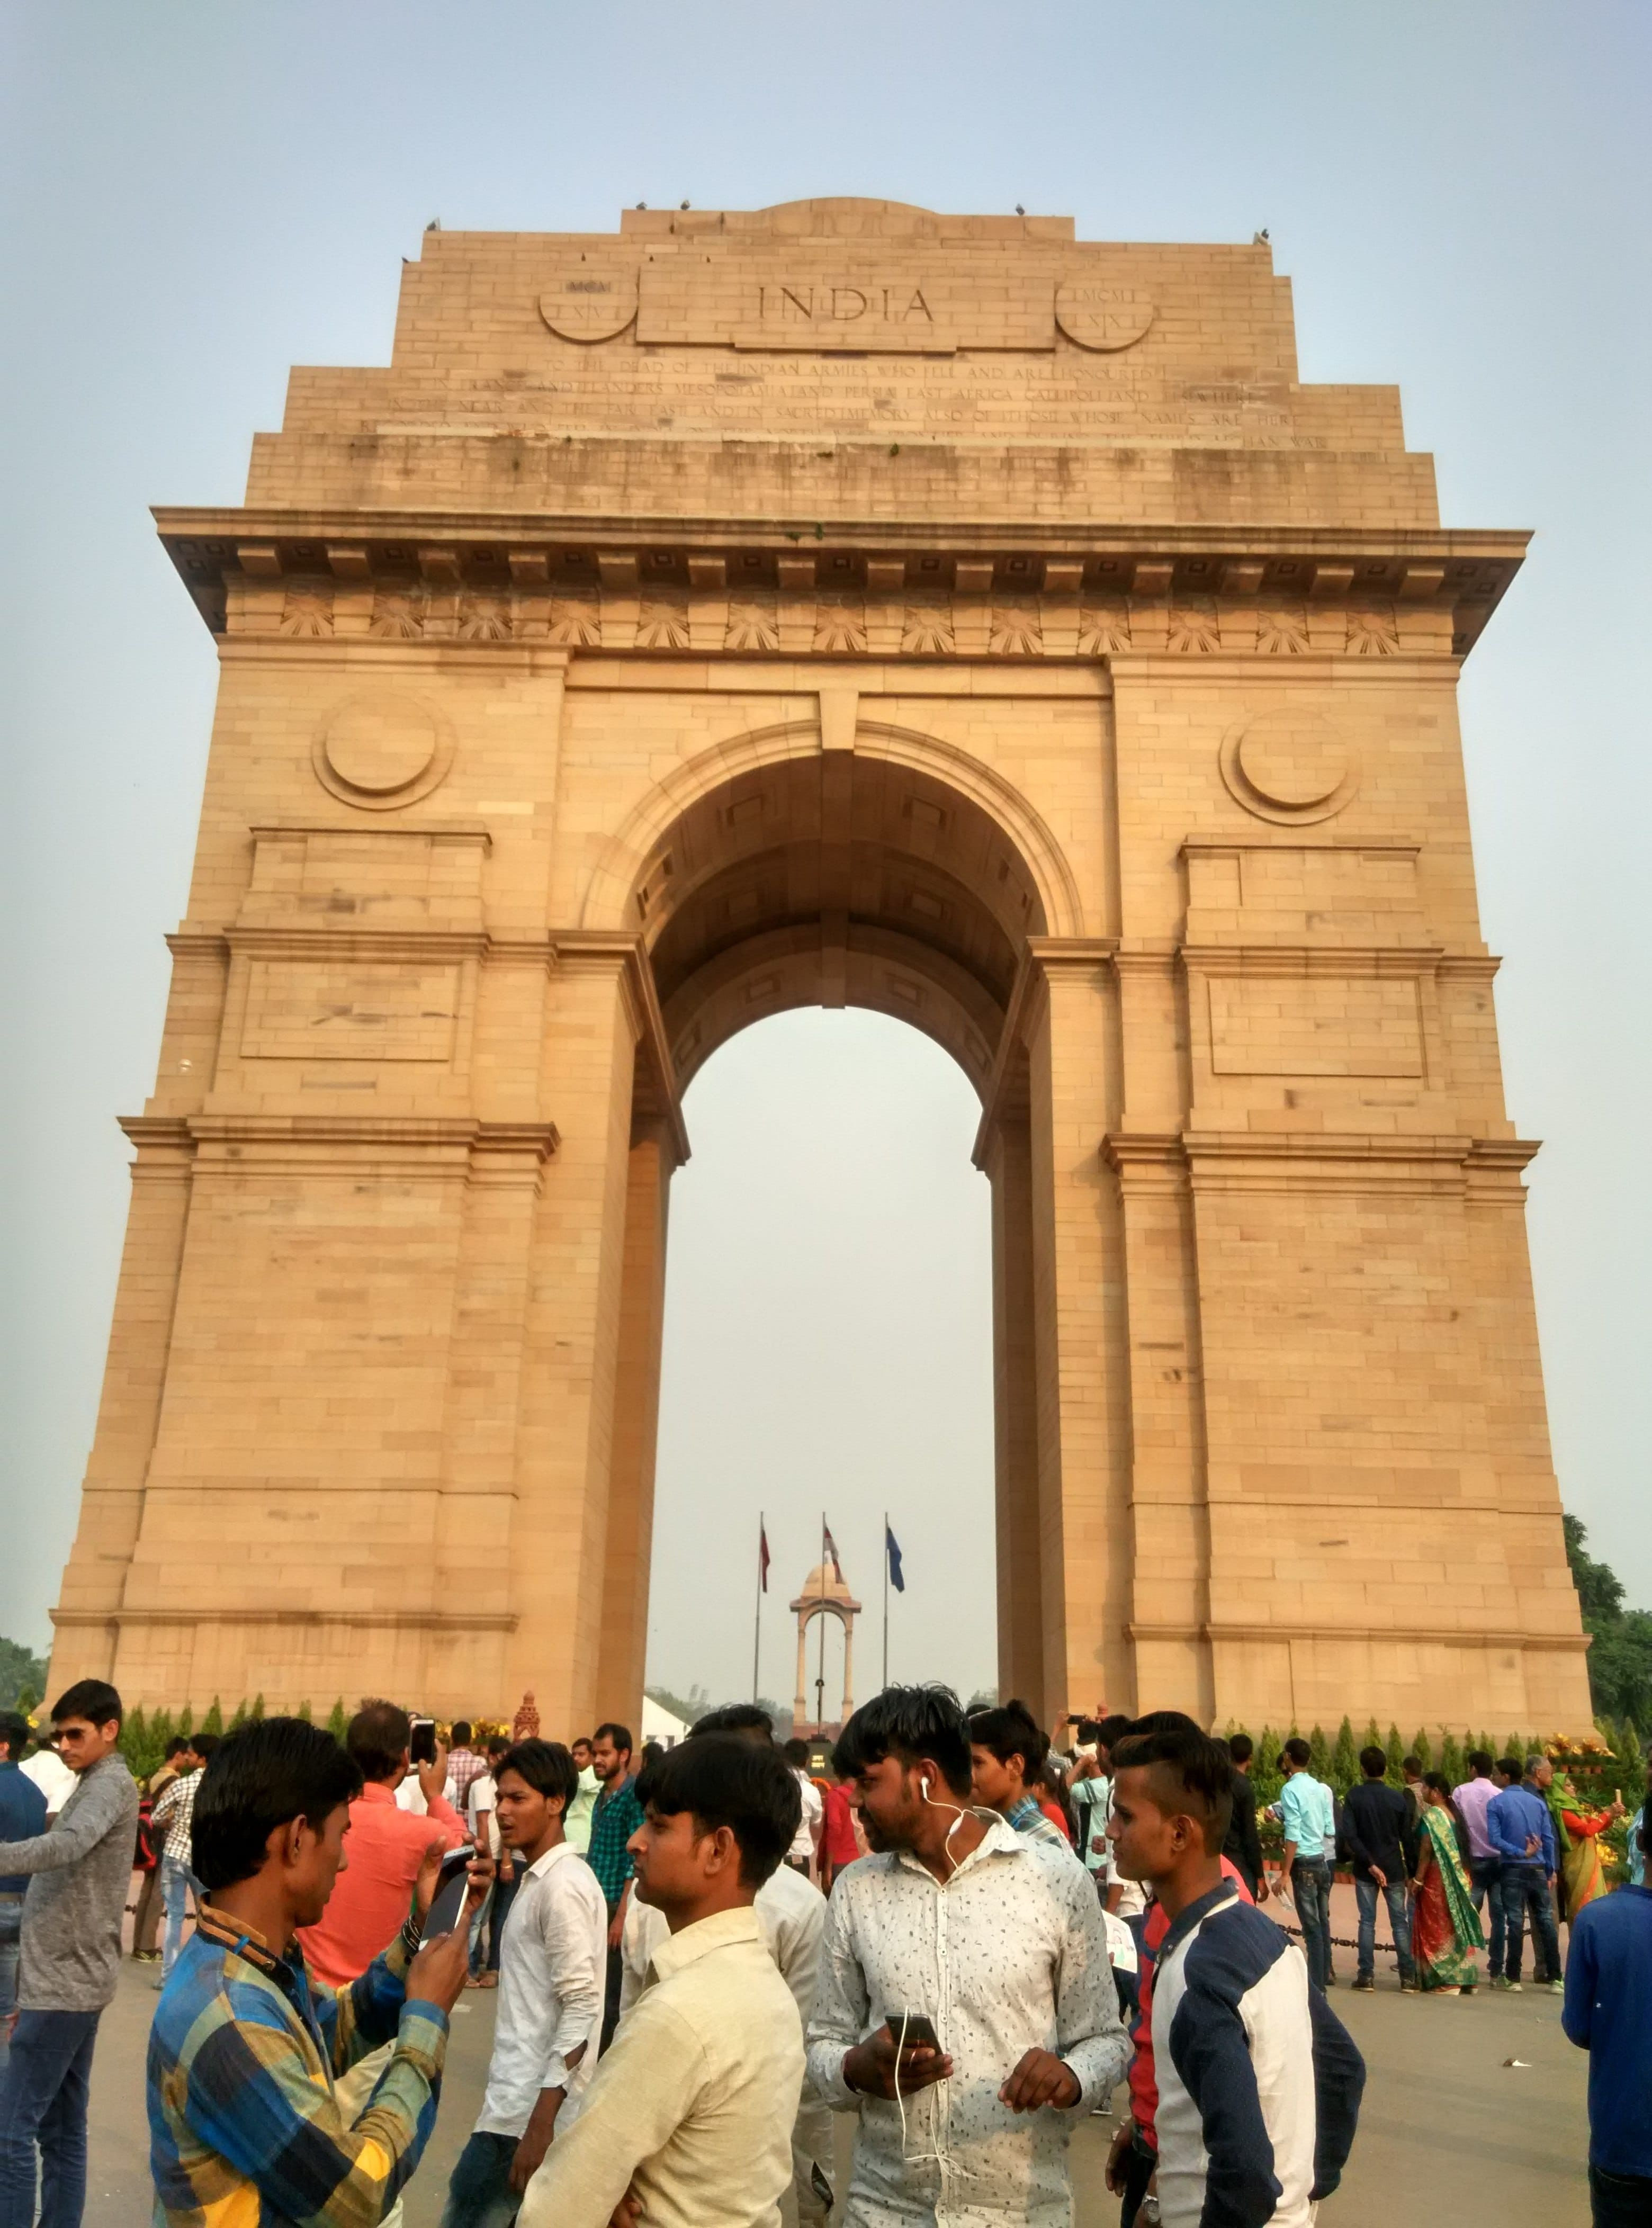 3 Tempat Wisata Gratis Yang Wajib Dikunjungi Di Kota Delhi, India - Diskusi Wisata - Dictio Community